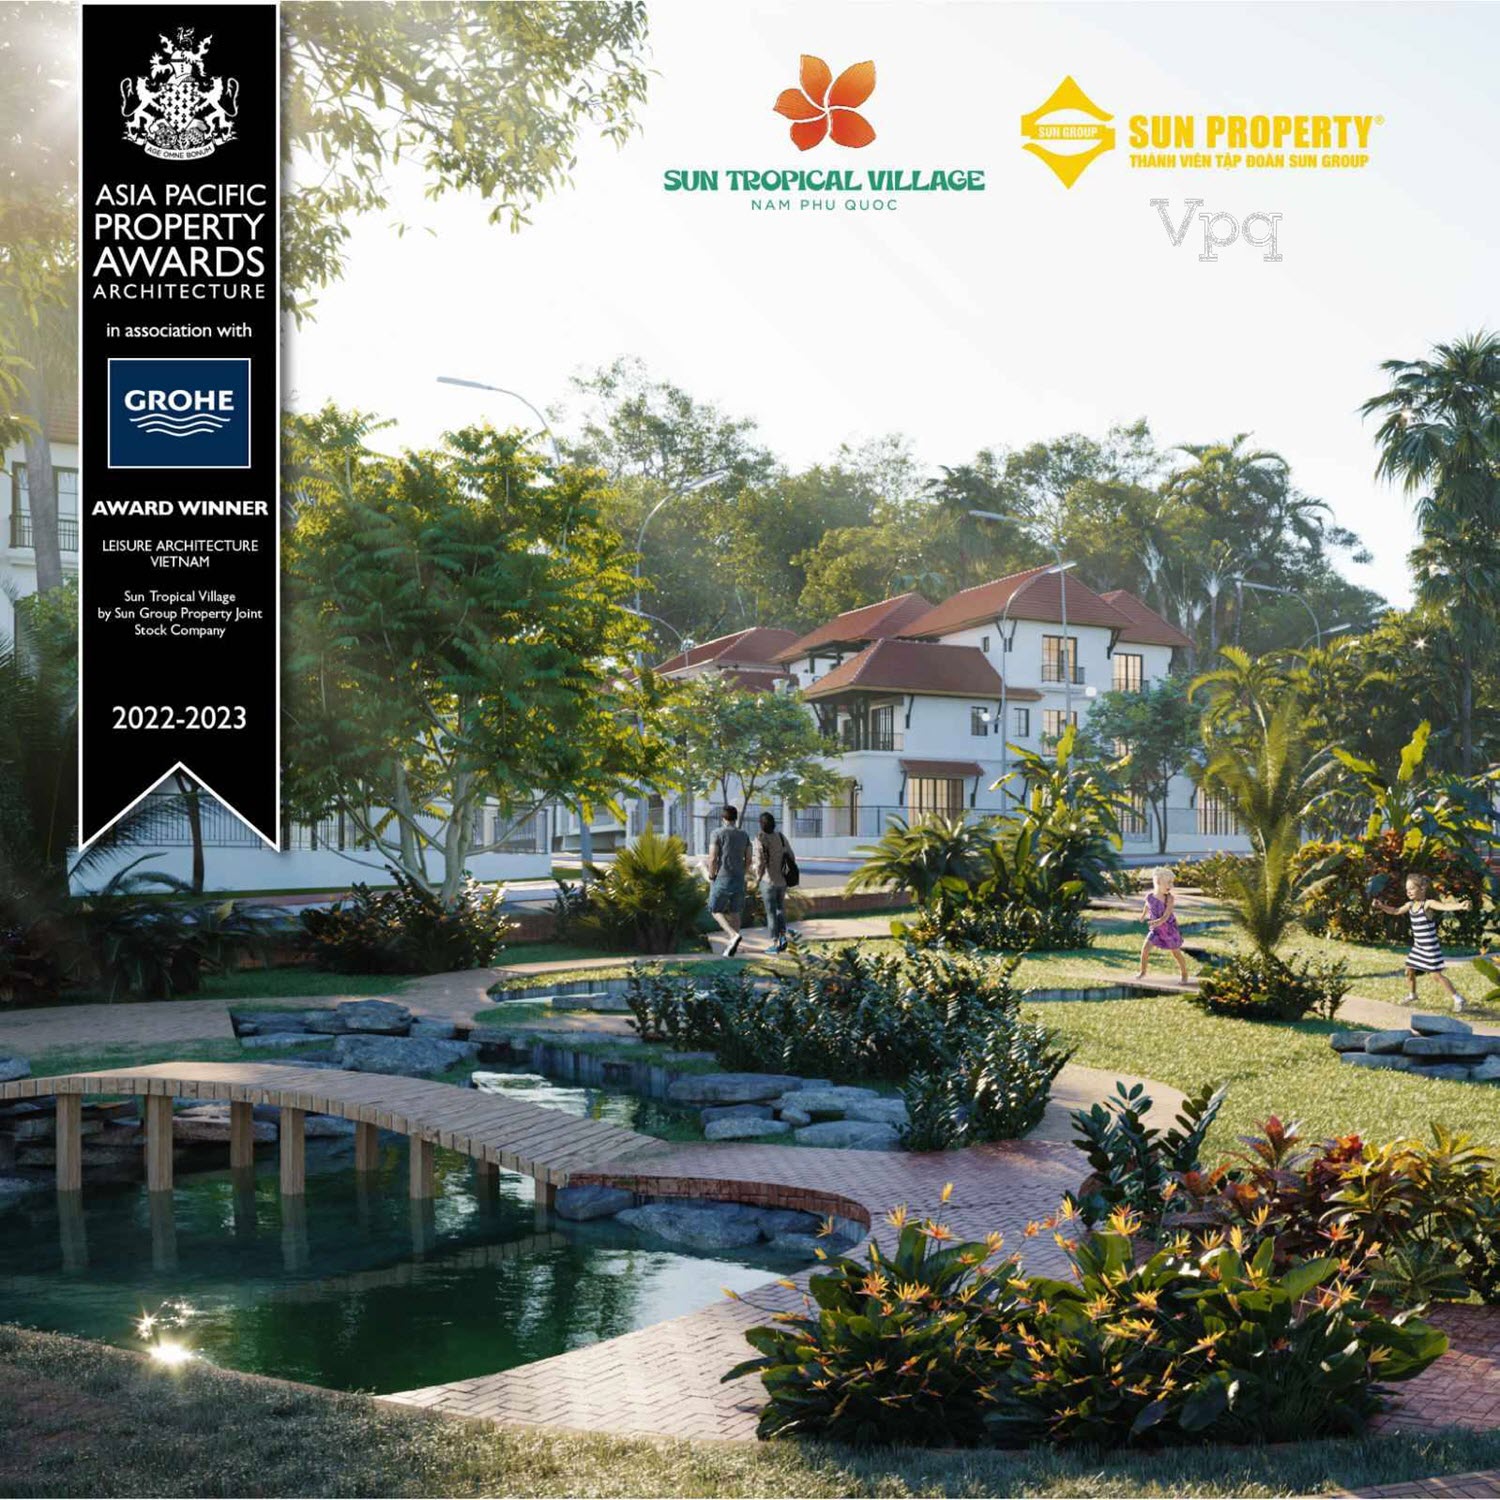    Sun Tropical Village - Dự án có kiến trúc nghỉ dưỡng hàng đầu Việt Nam (Leisure Architecture Vietnam)